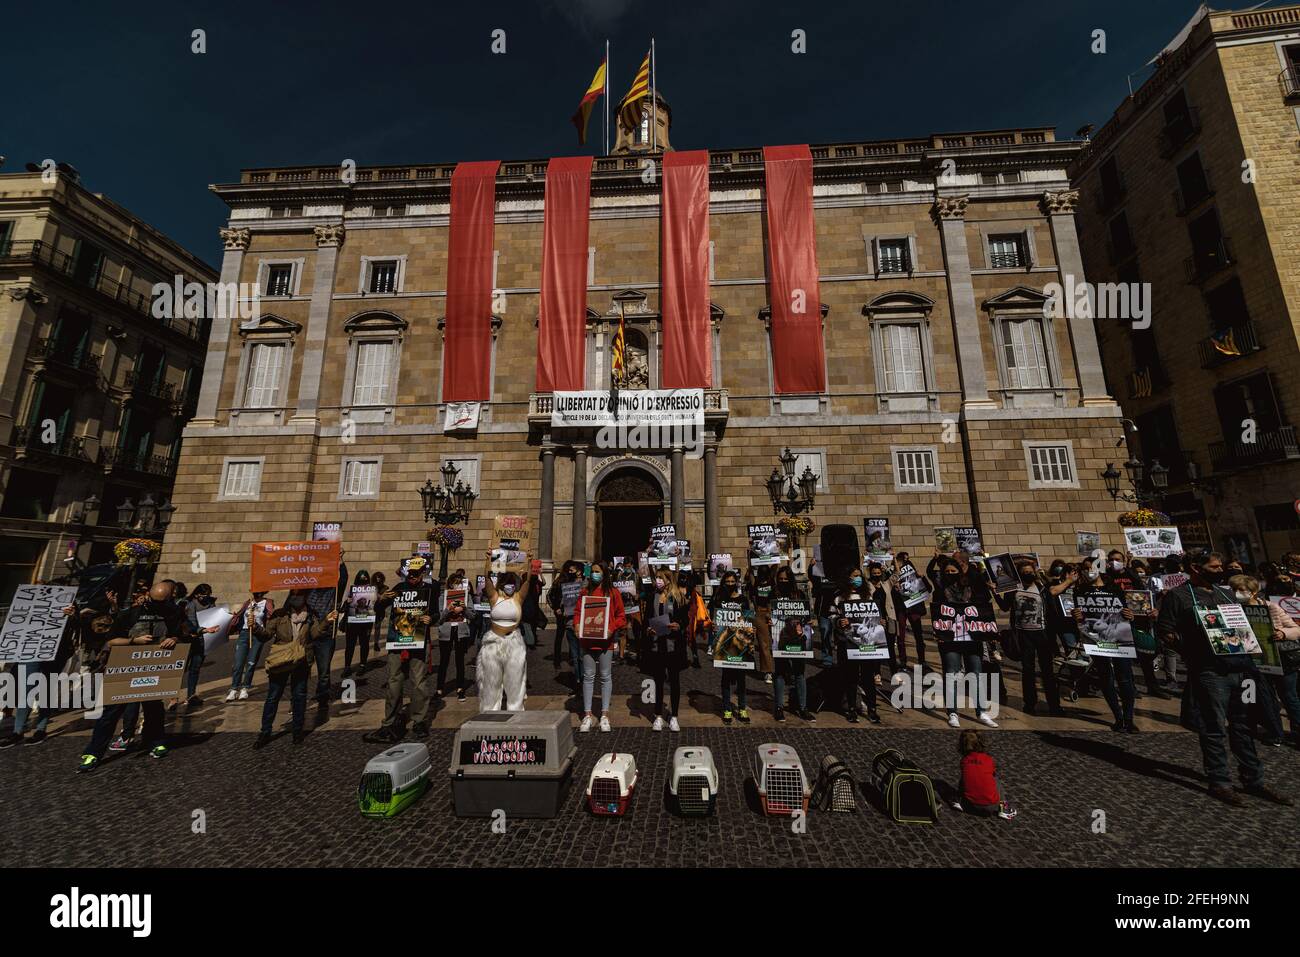 Barcellona, Spagna. 24 Apr 2021. Gli attivisti hanno dei cartelli che chiedono la chiusura del laboratorio di sperimentazione animale 'vivotecnia' durante una protesta per i diritti degli animali in scena a Barcellona Credit: Matthias Oesterle/Alamy Live News Foto Stock